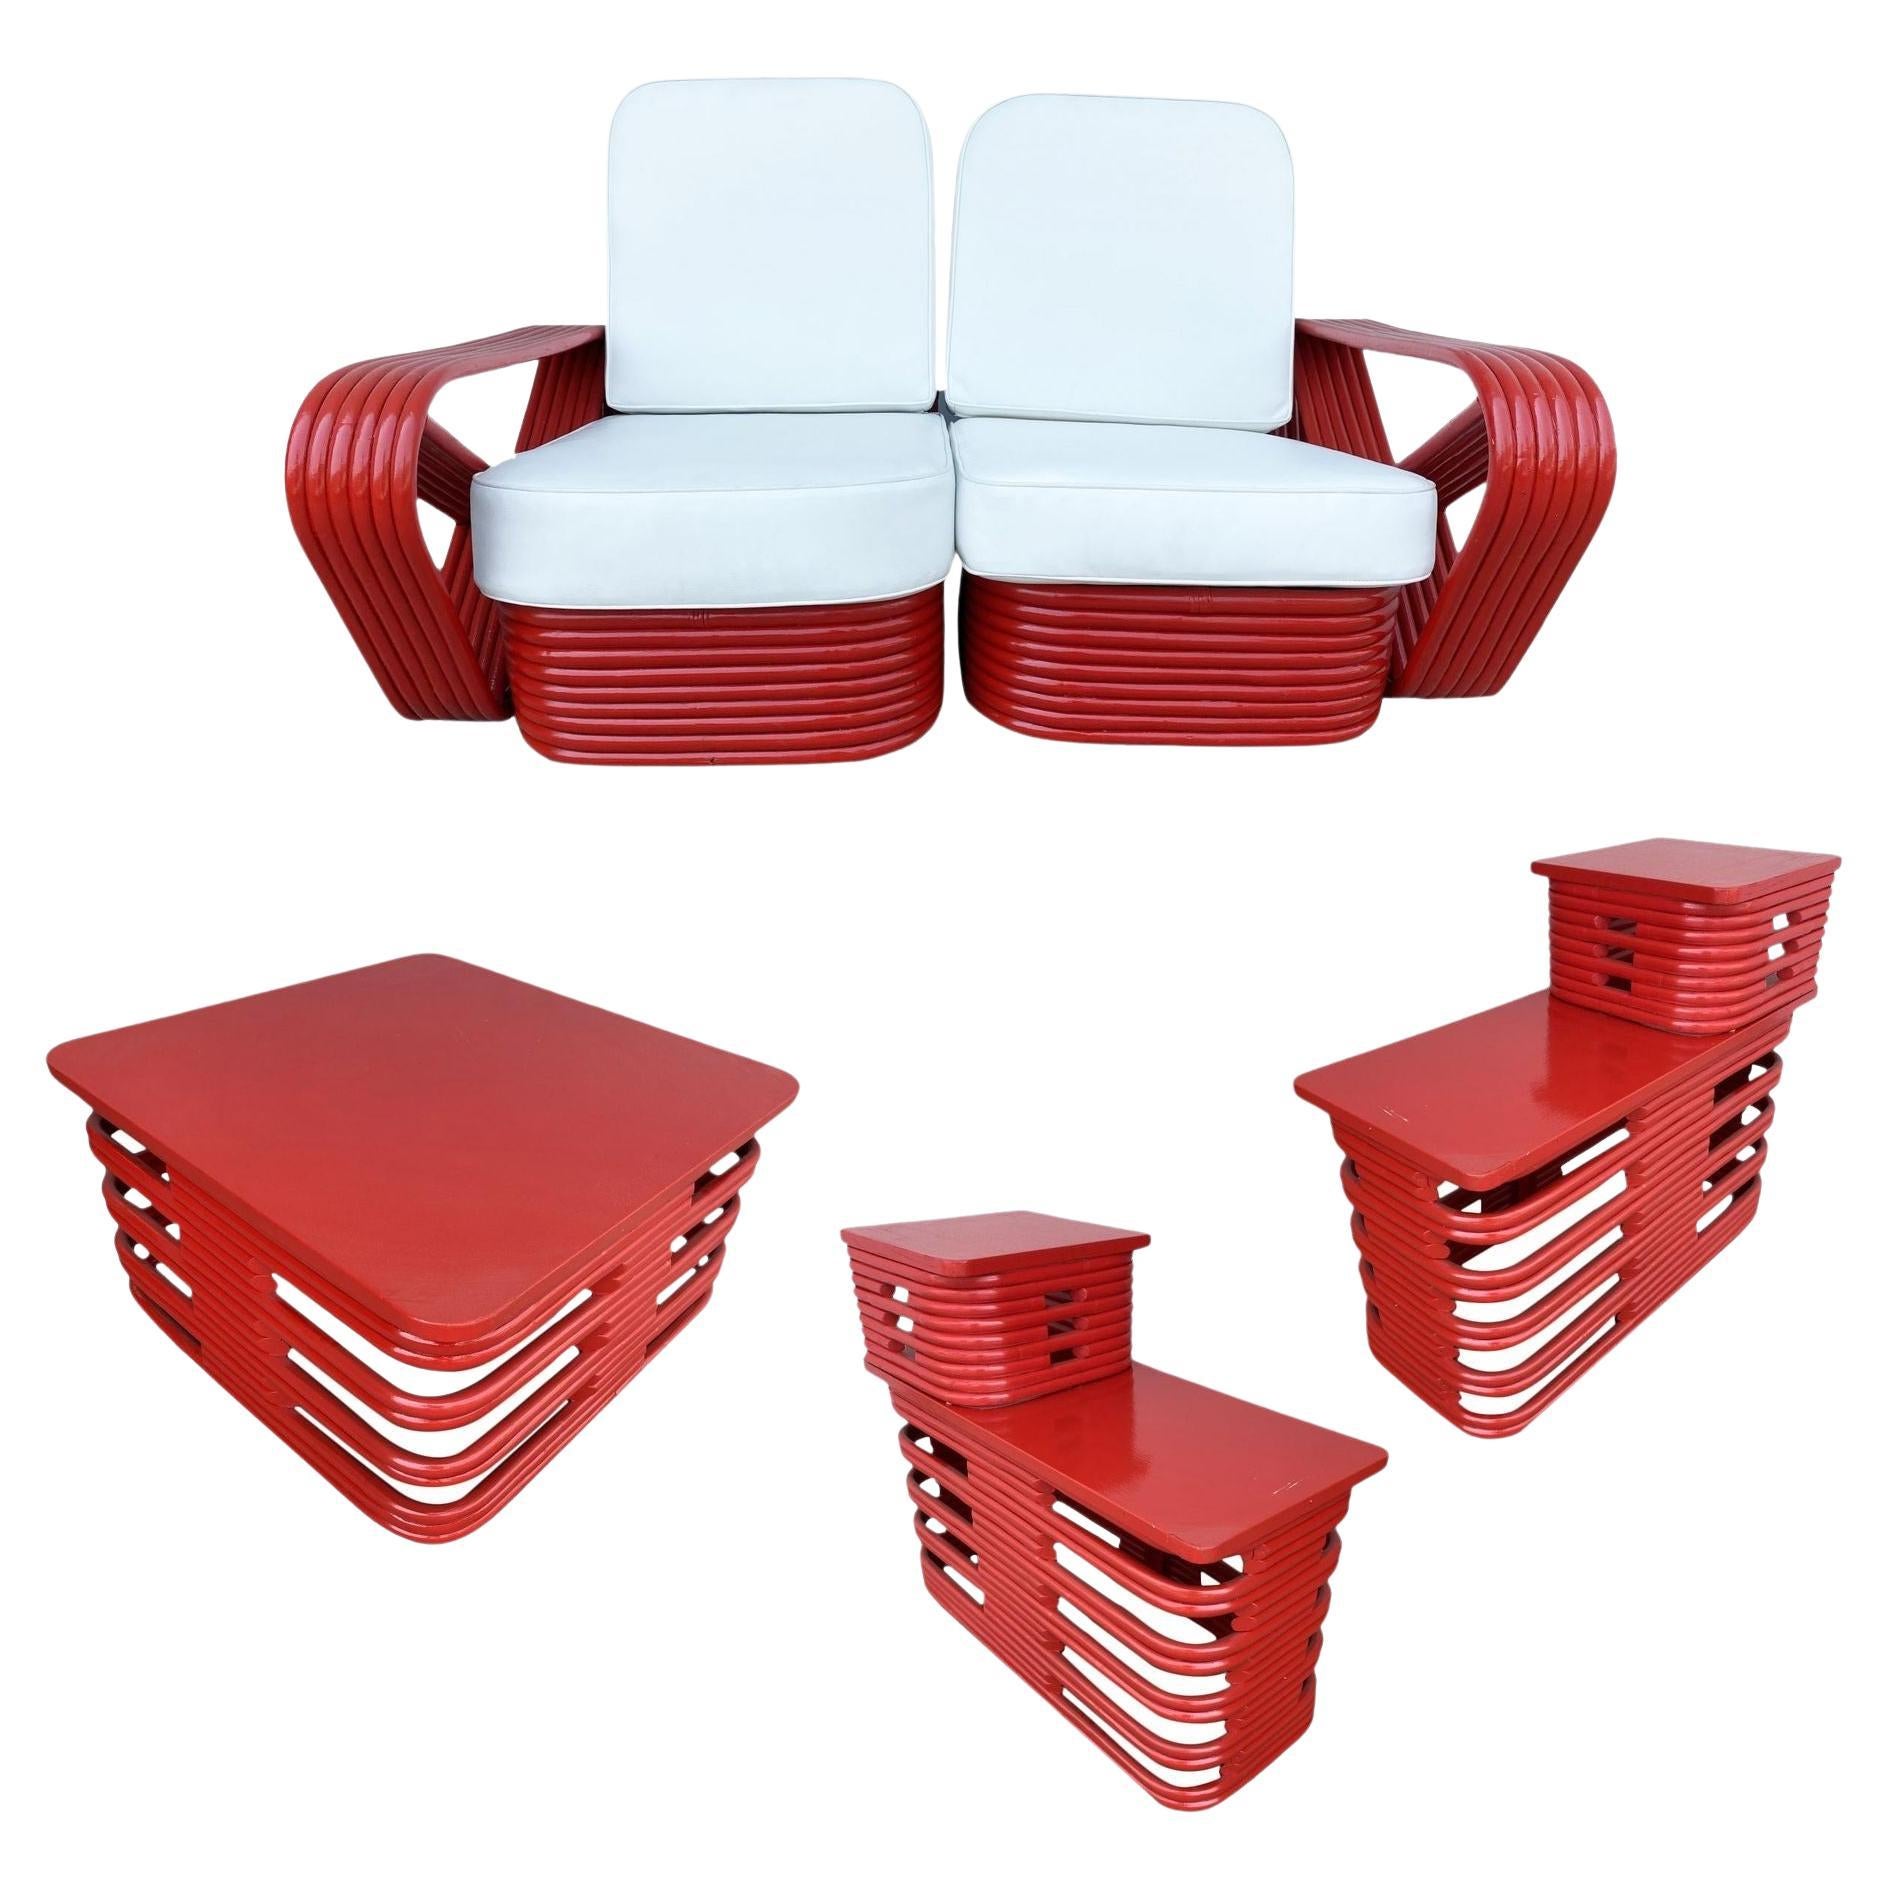 Ensemble de salon rouge restauré, composé d'un canapé et d'une table, d'un bretzel carré à six brins et d'une table